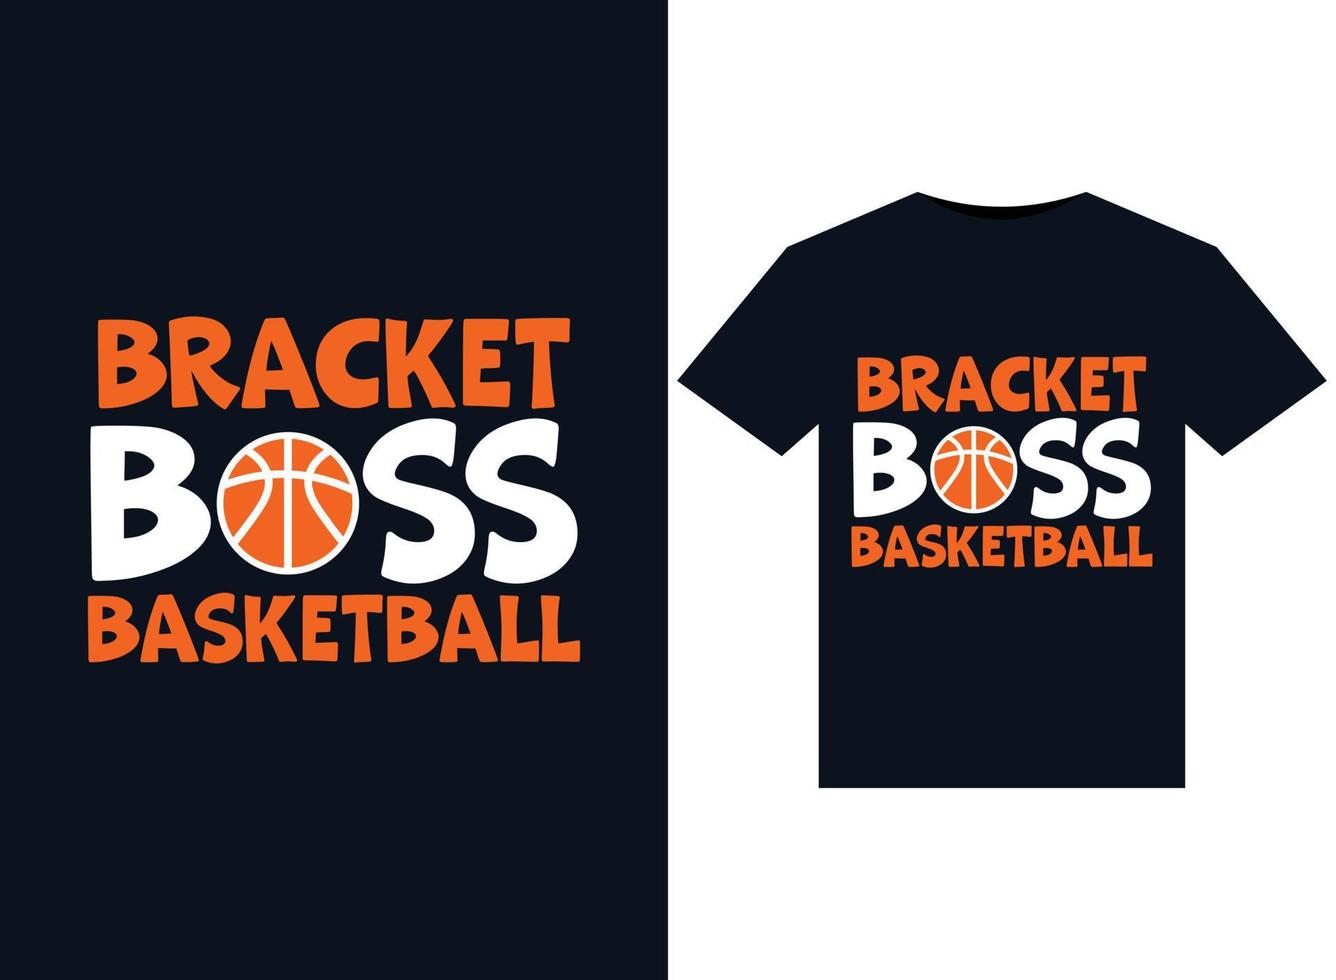 ilustrações de basquete de chefe de suporte para design de camisetas prontas para impressão vetor